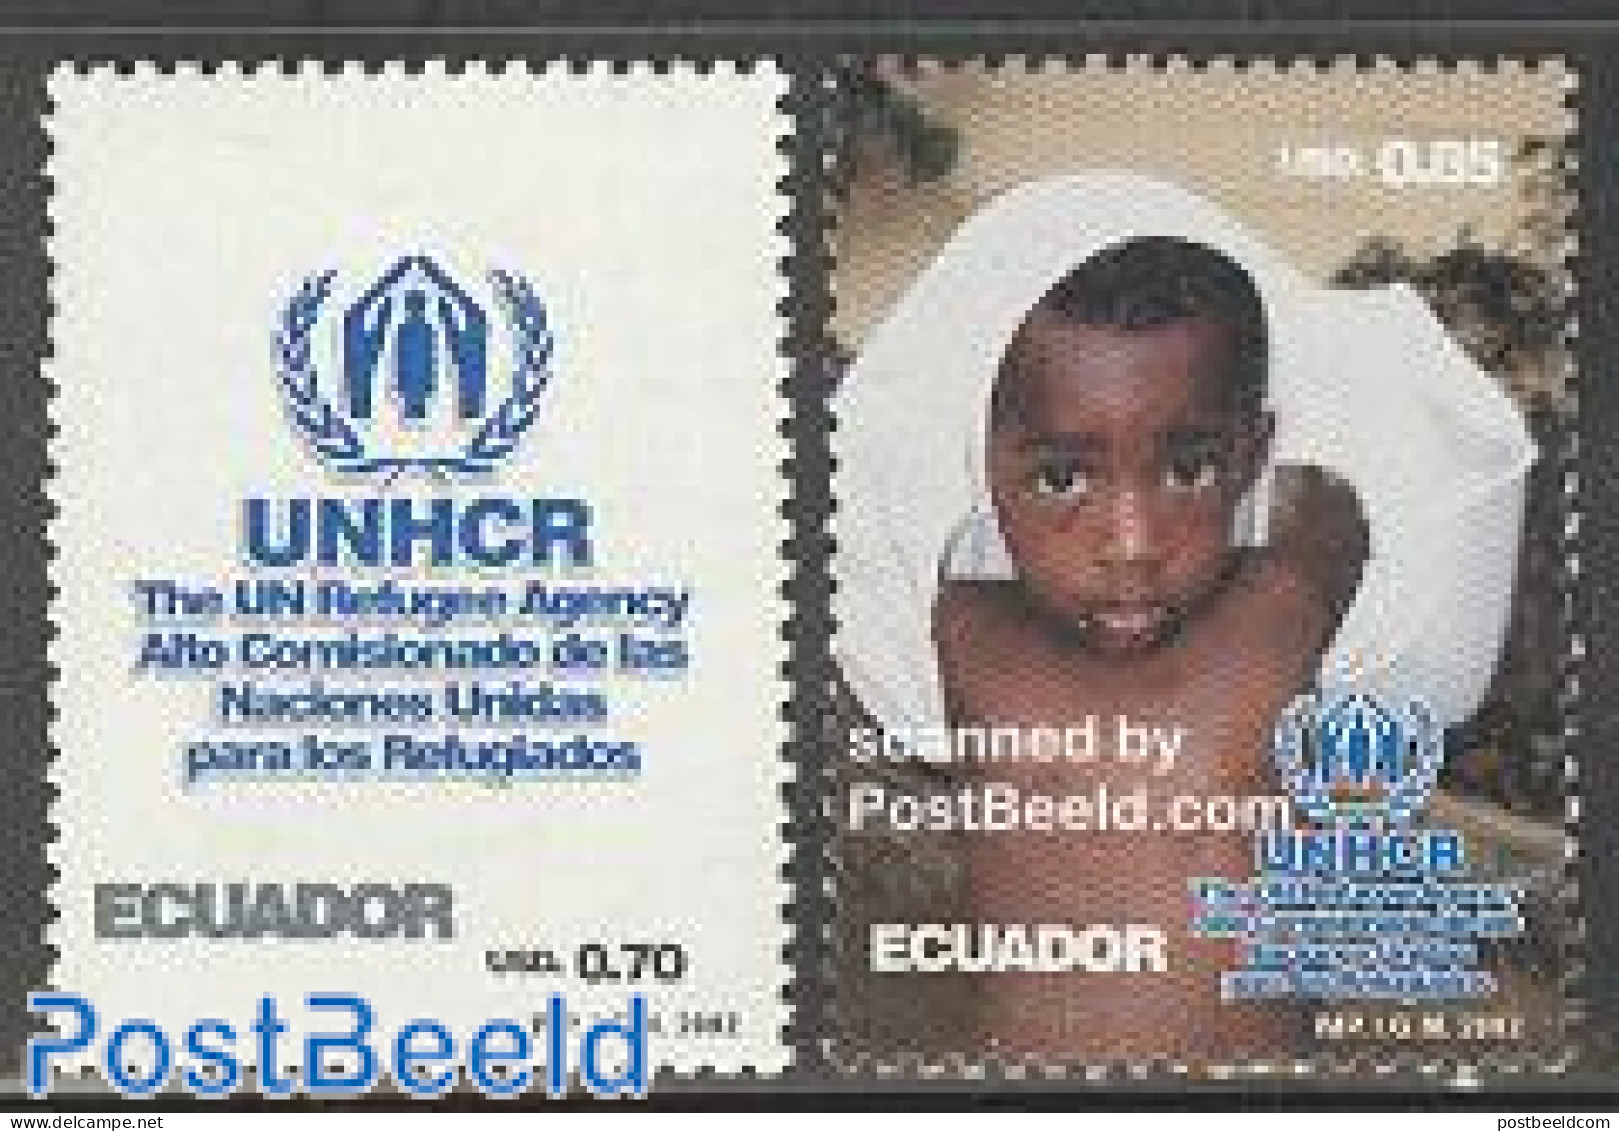 Ecuador 2002 UNHCR 2v, Mint NH, History - Refugees - United Nations - Réfugiés